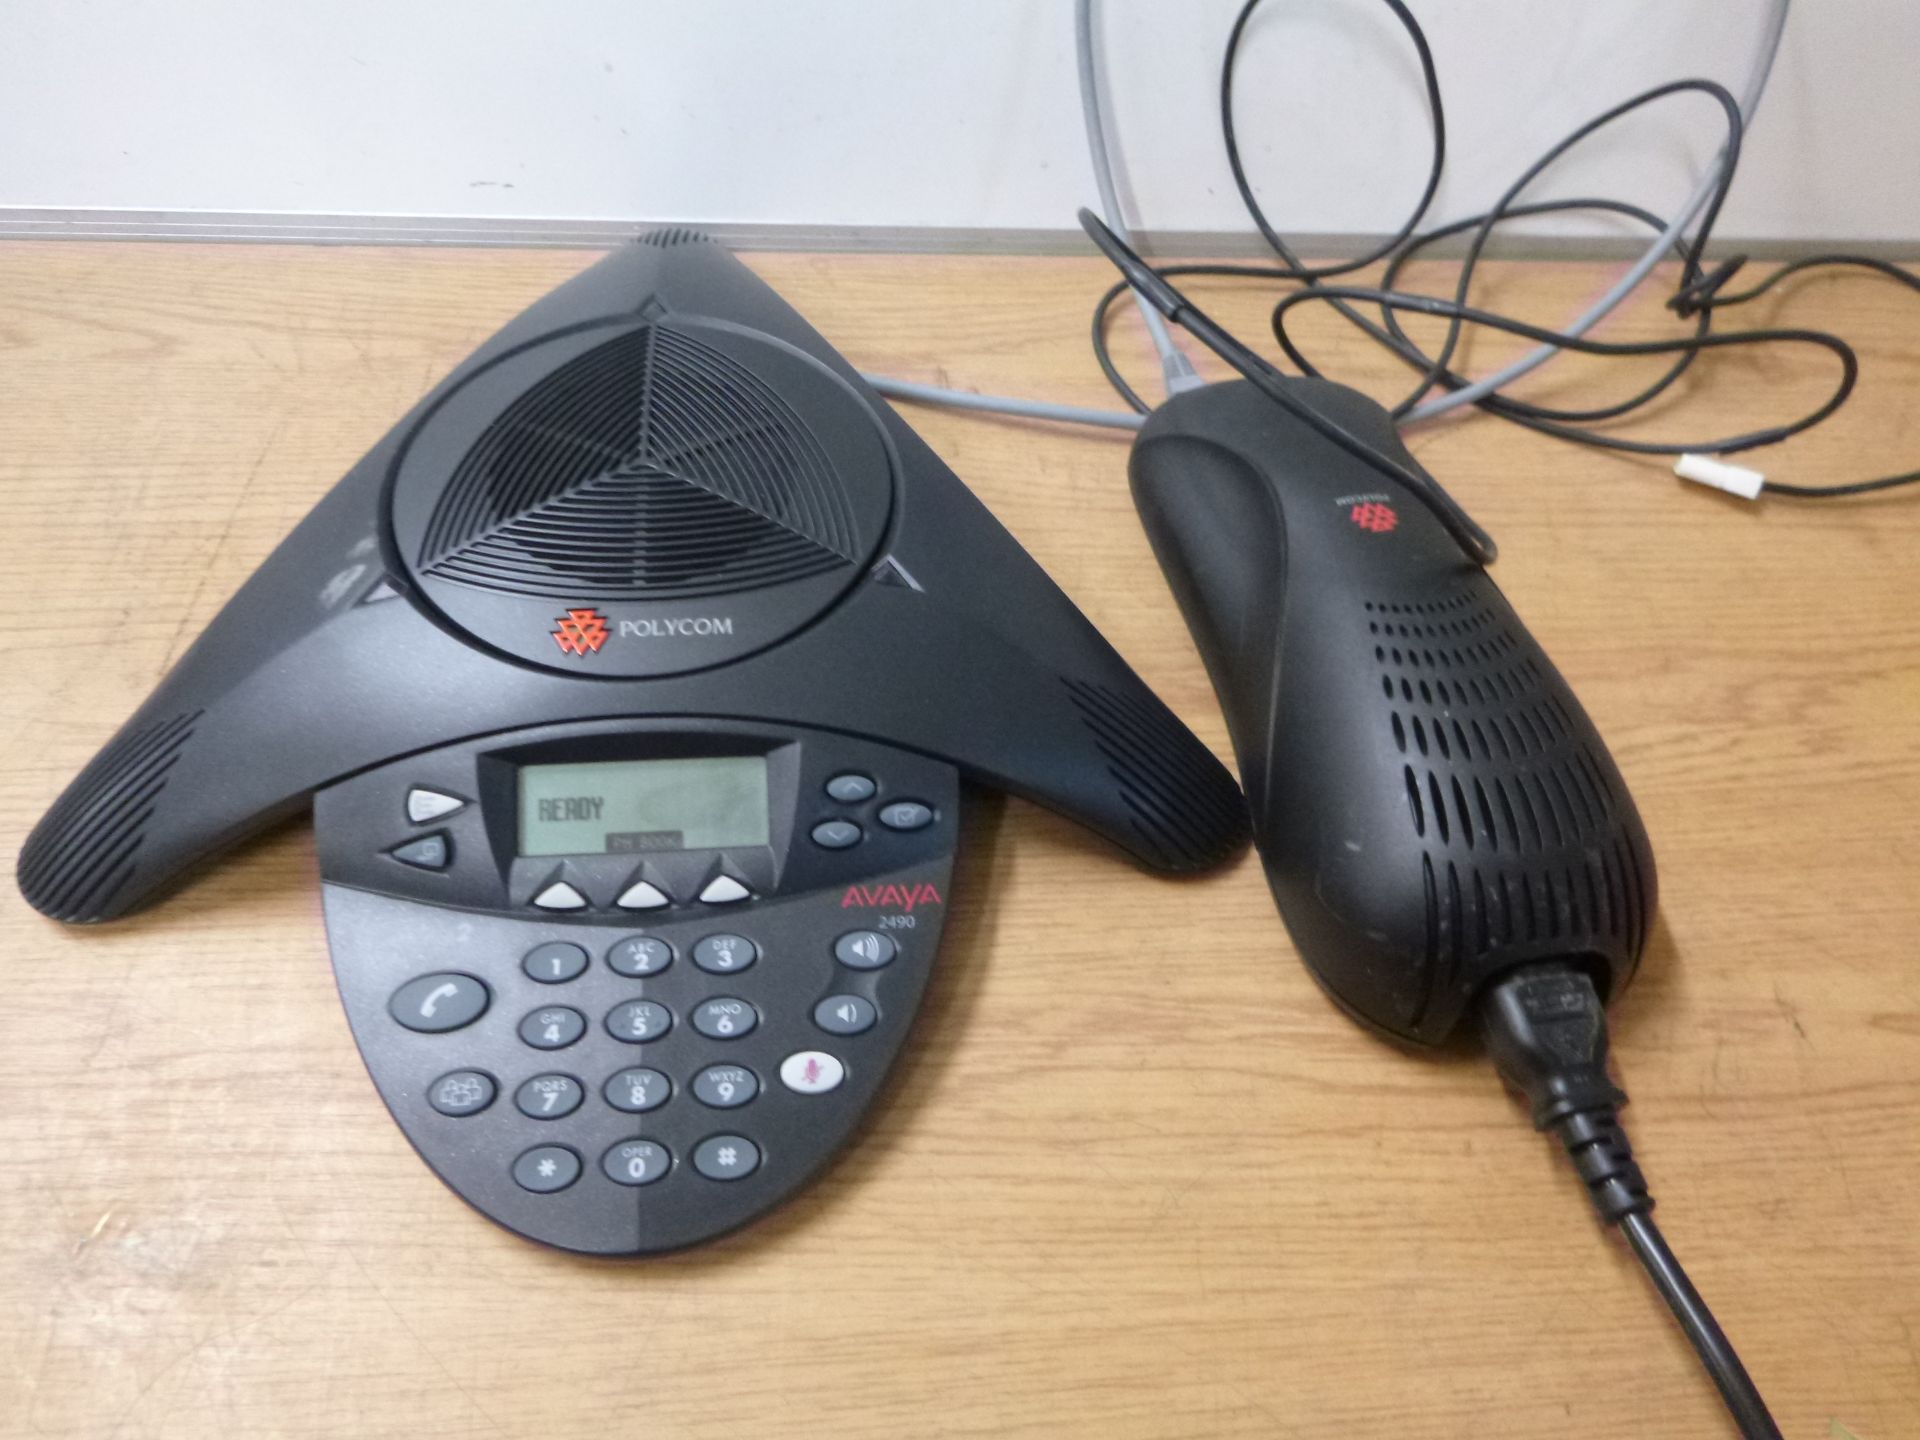 polycom soundstation 2 conference phone .model avaya 2490. Complete with Polycom soundstation 2